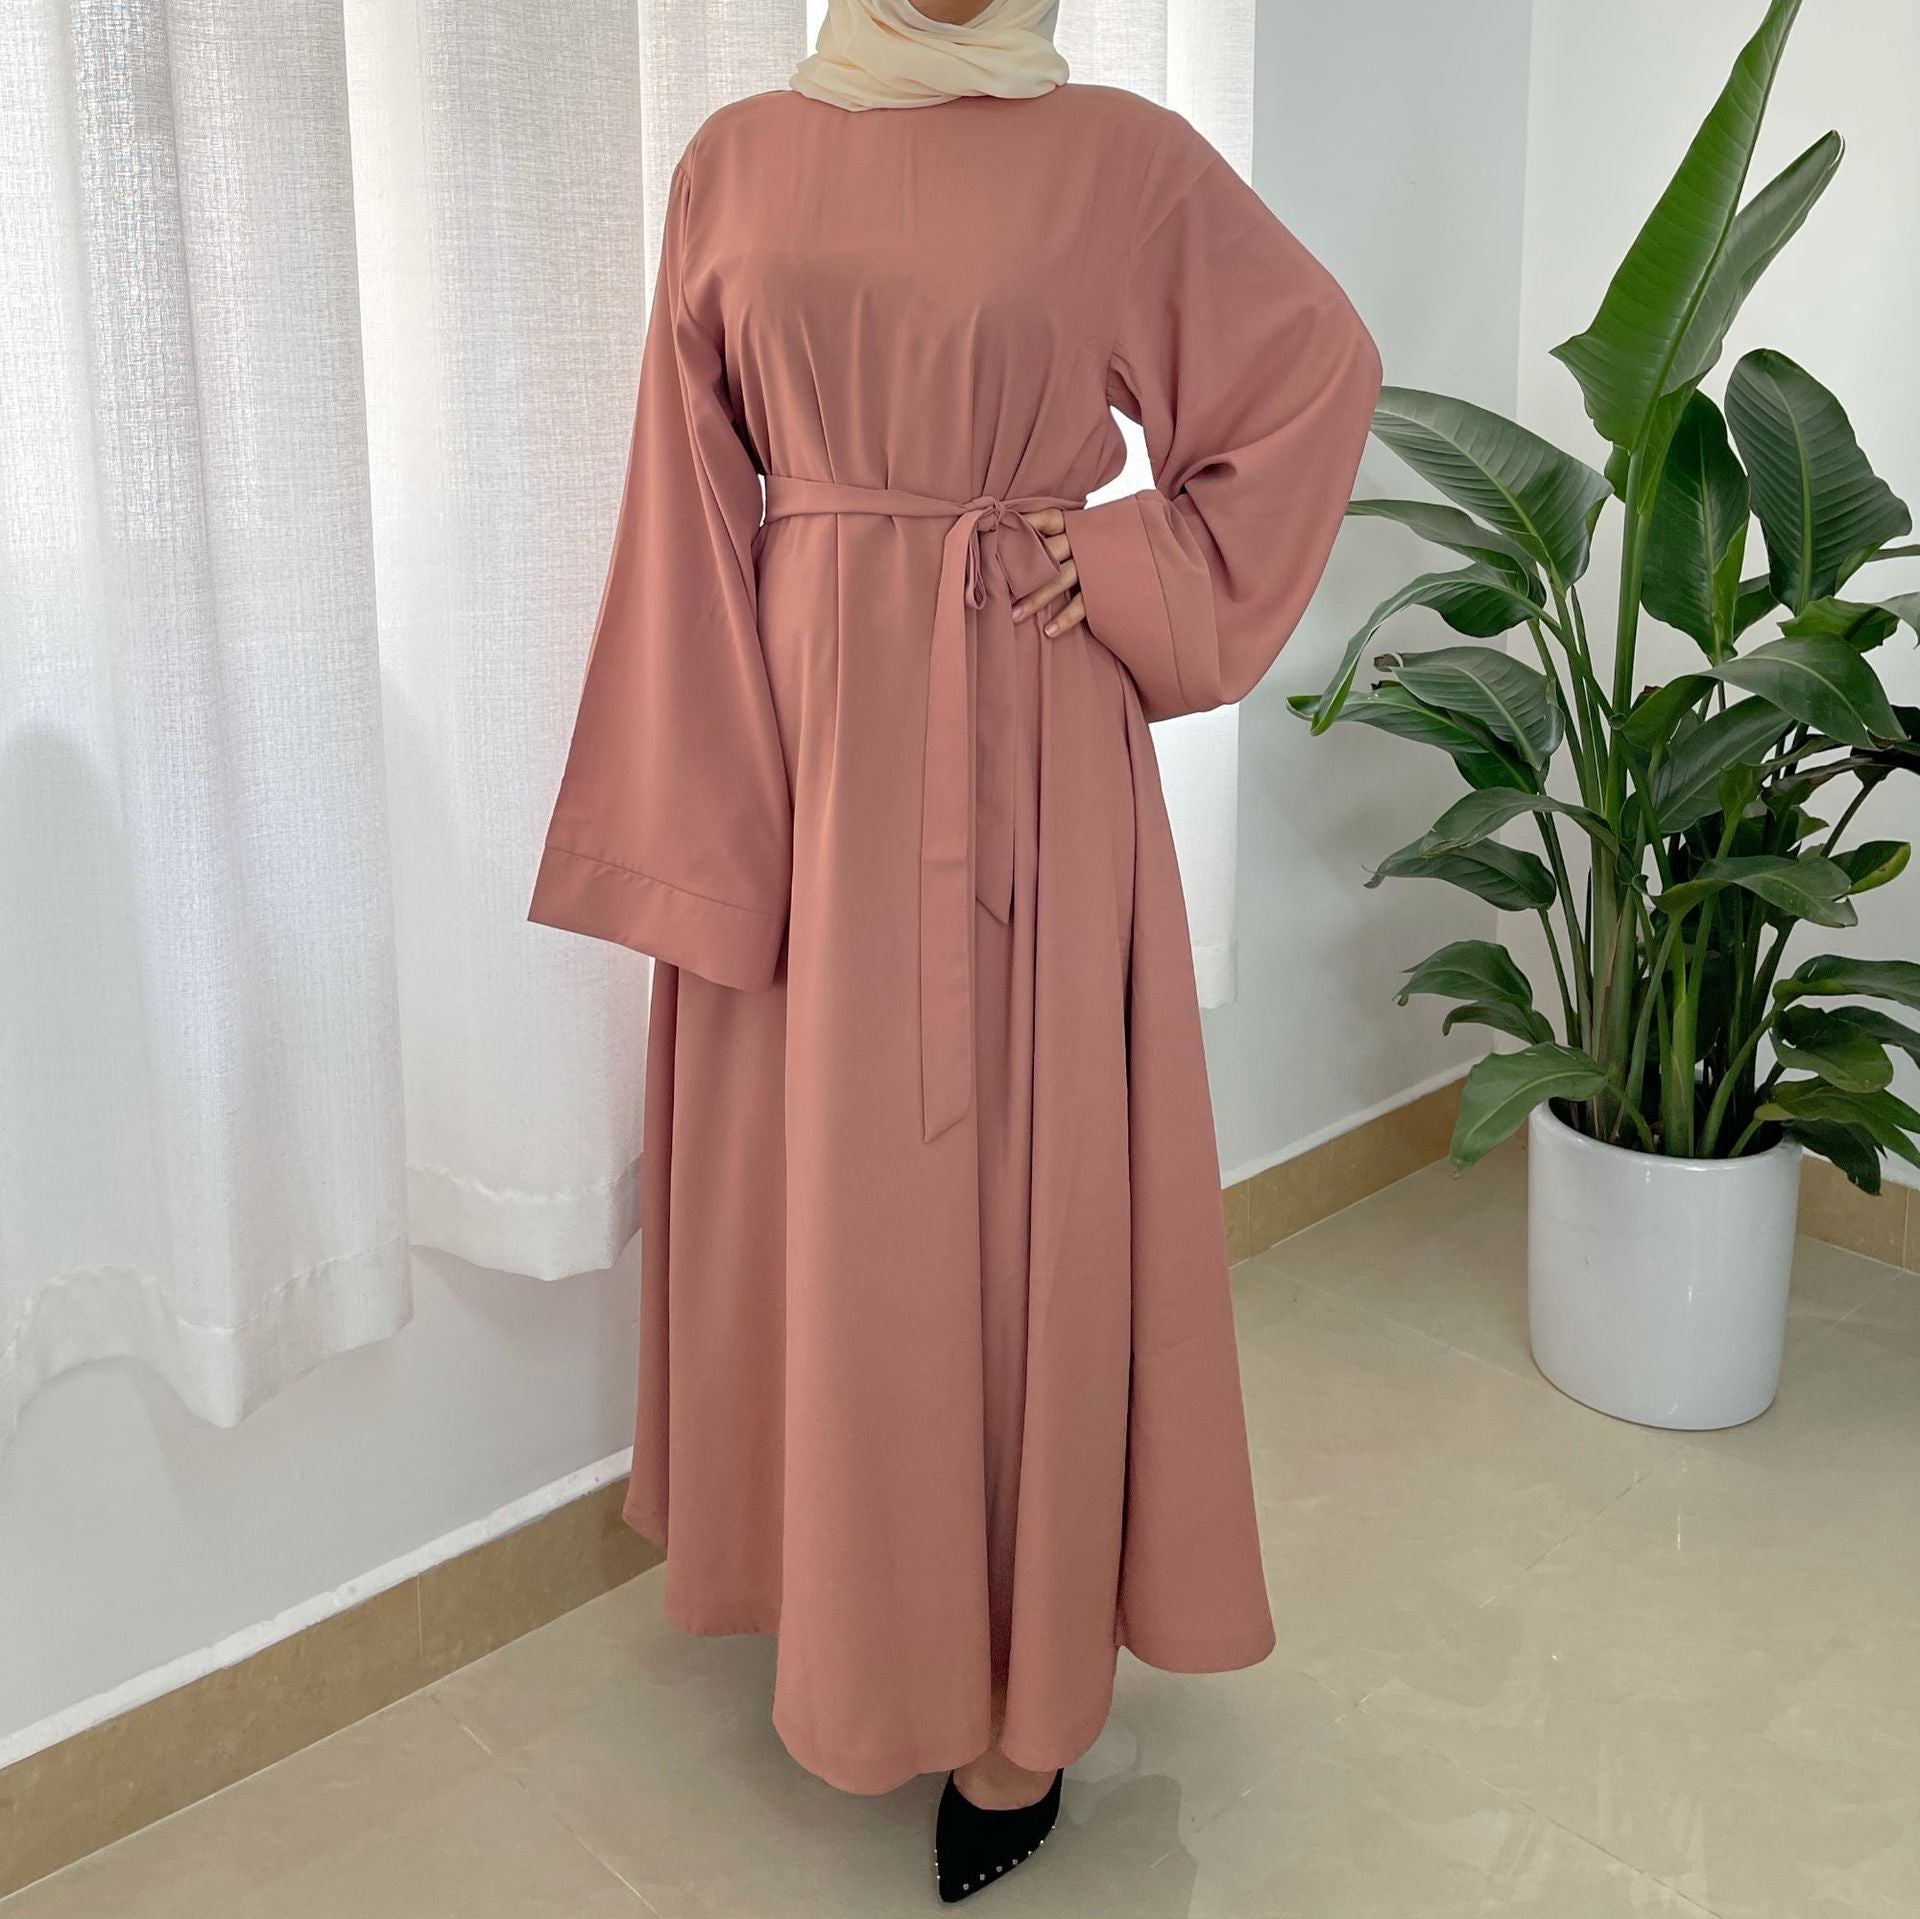 Robe Plus Size Muslim Dress - Carvan Mart Ltd